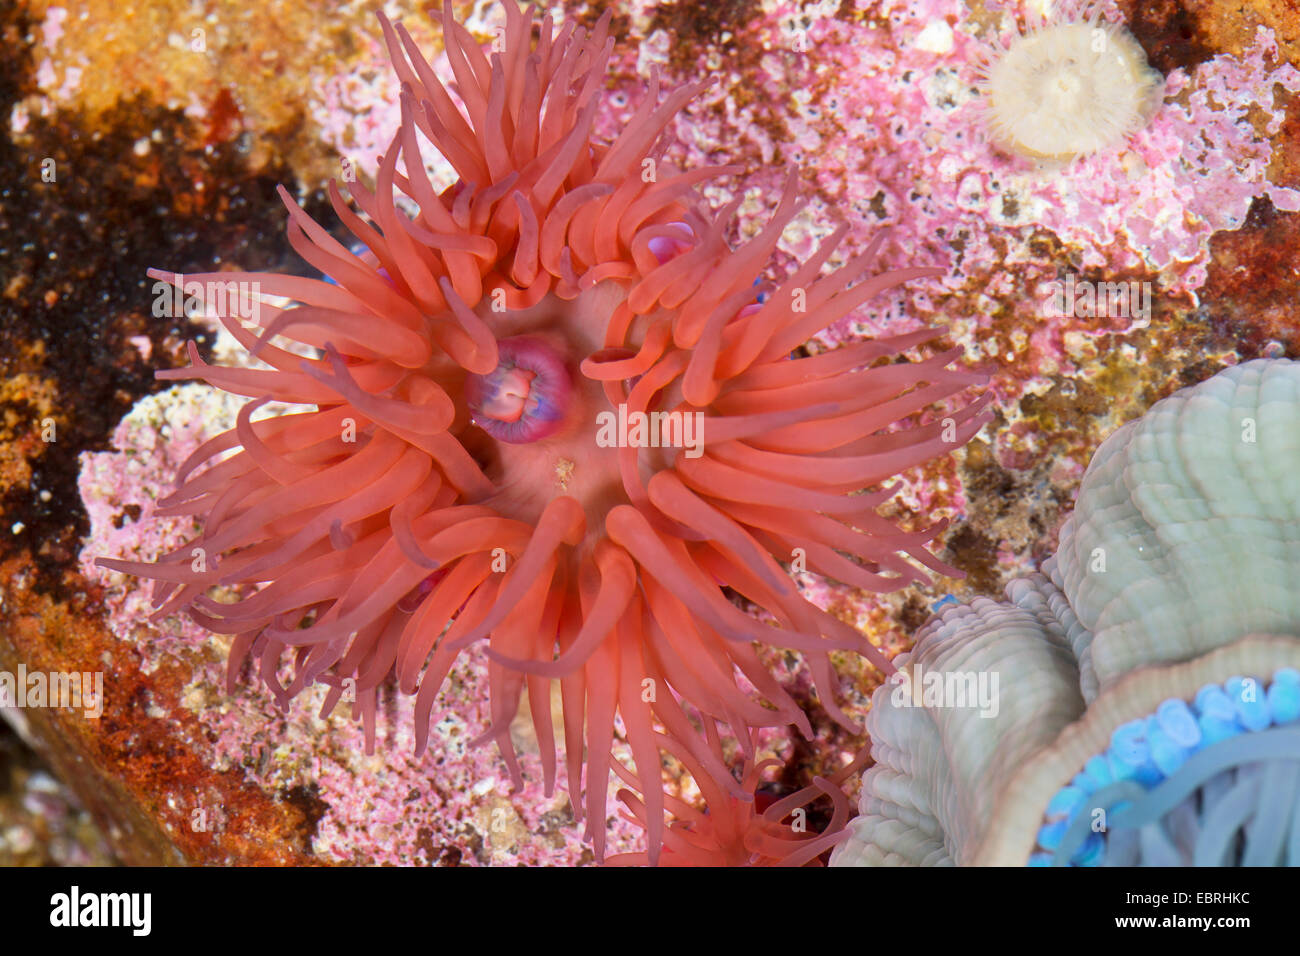 Mikrokügelchen Anemone, rote Seeanemone, Pflaume Anemone, Mikrokügelchen-Anemone (Actinia Equina) Stockfoto